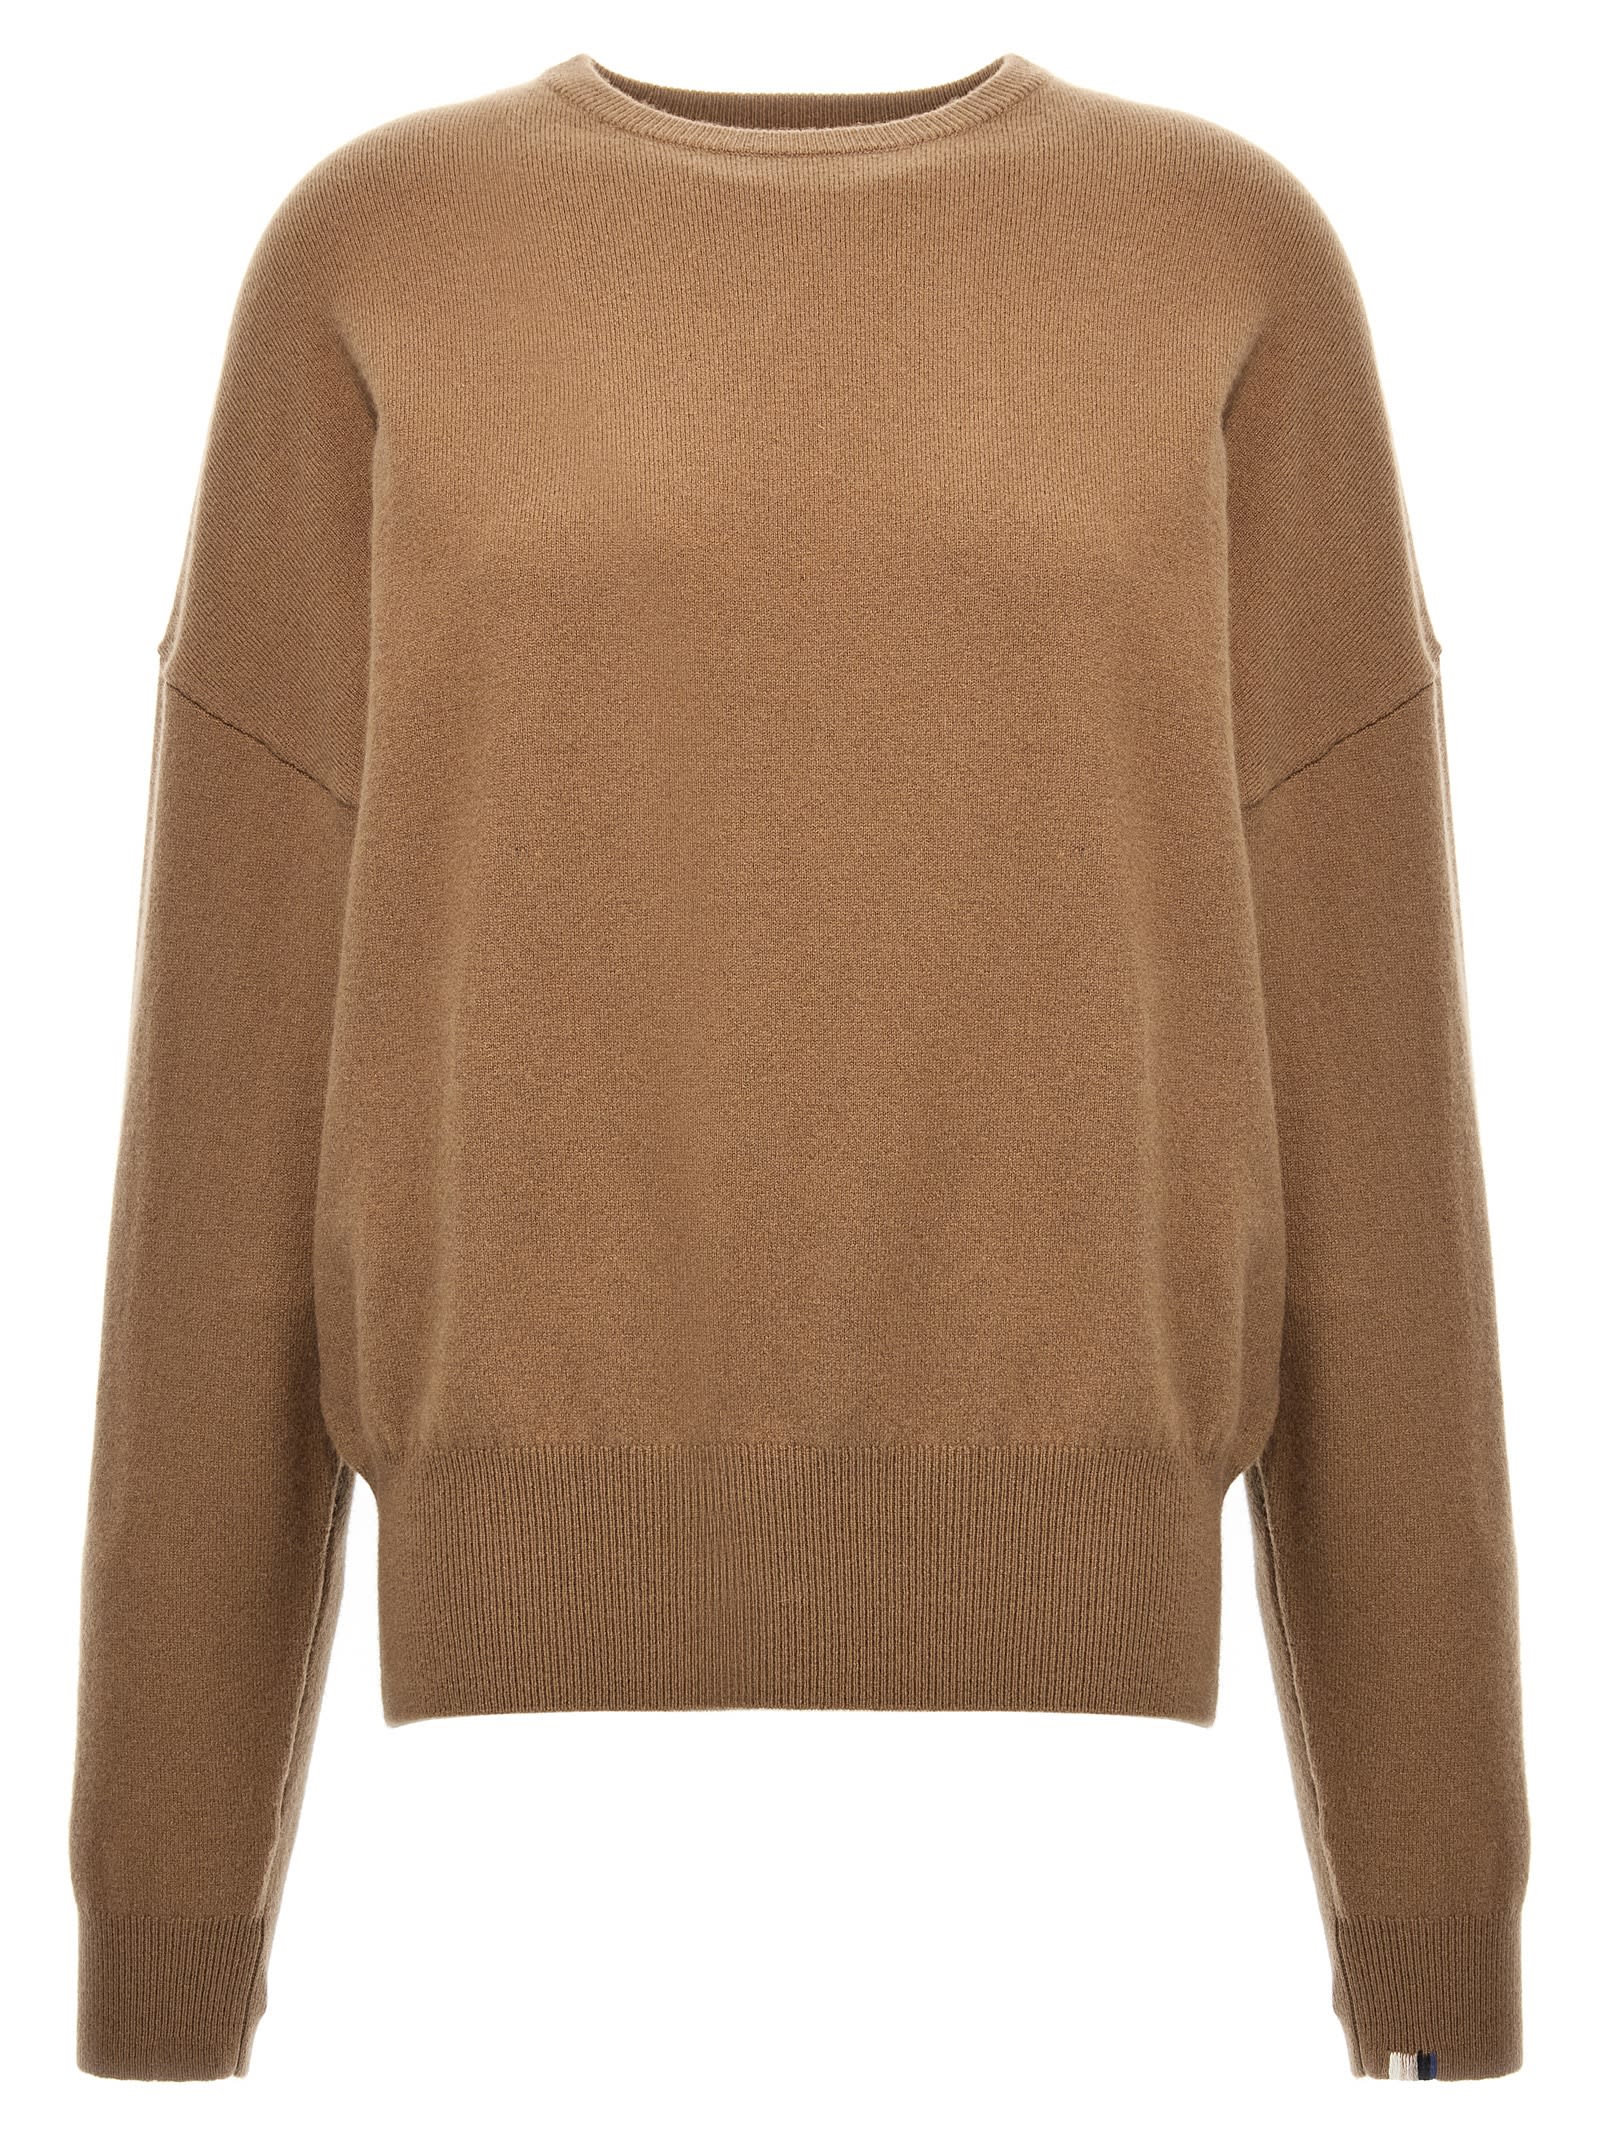 n°355 Tes Sweater